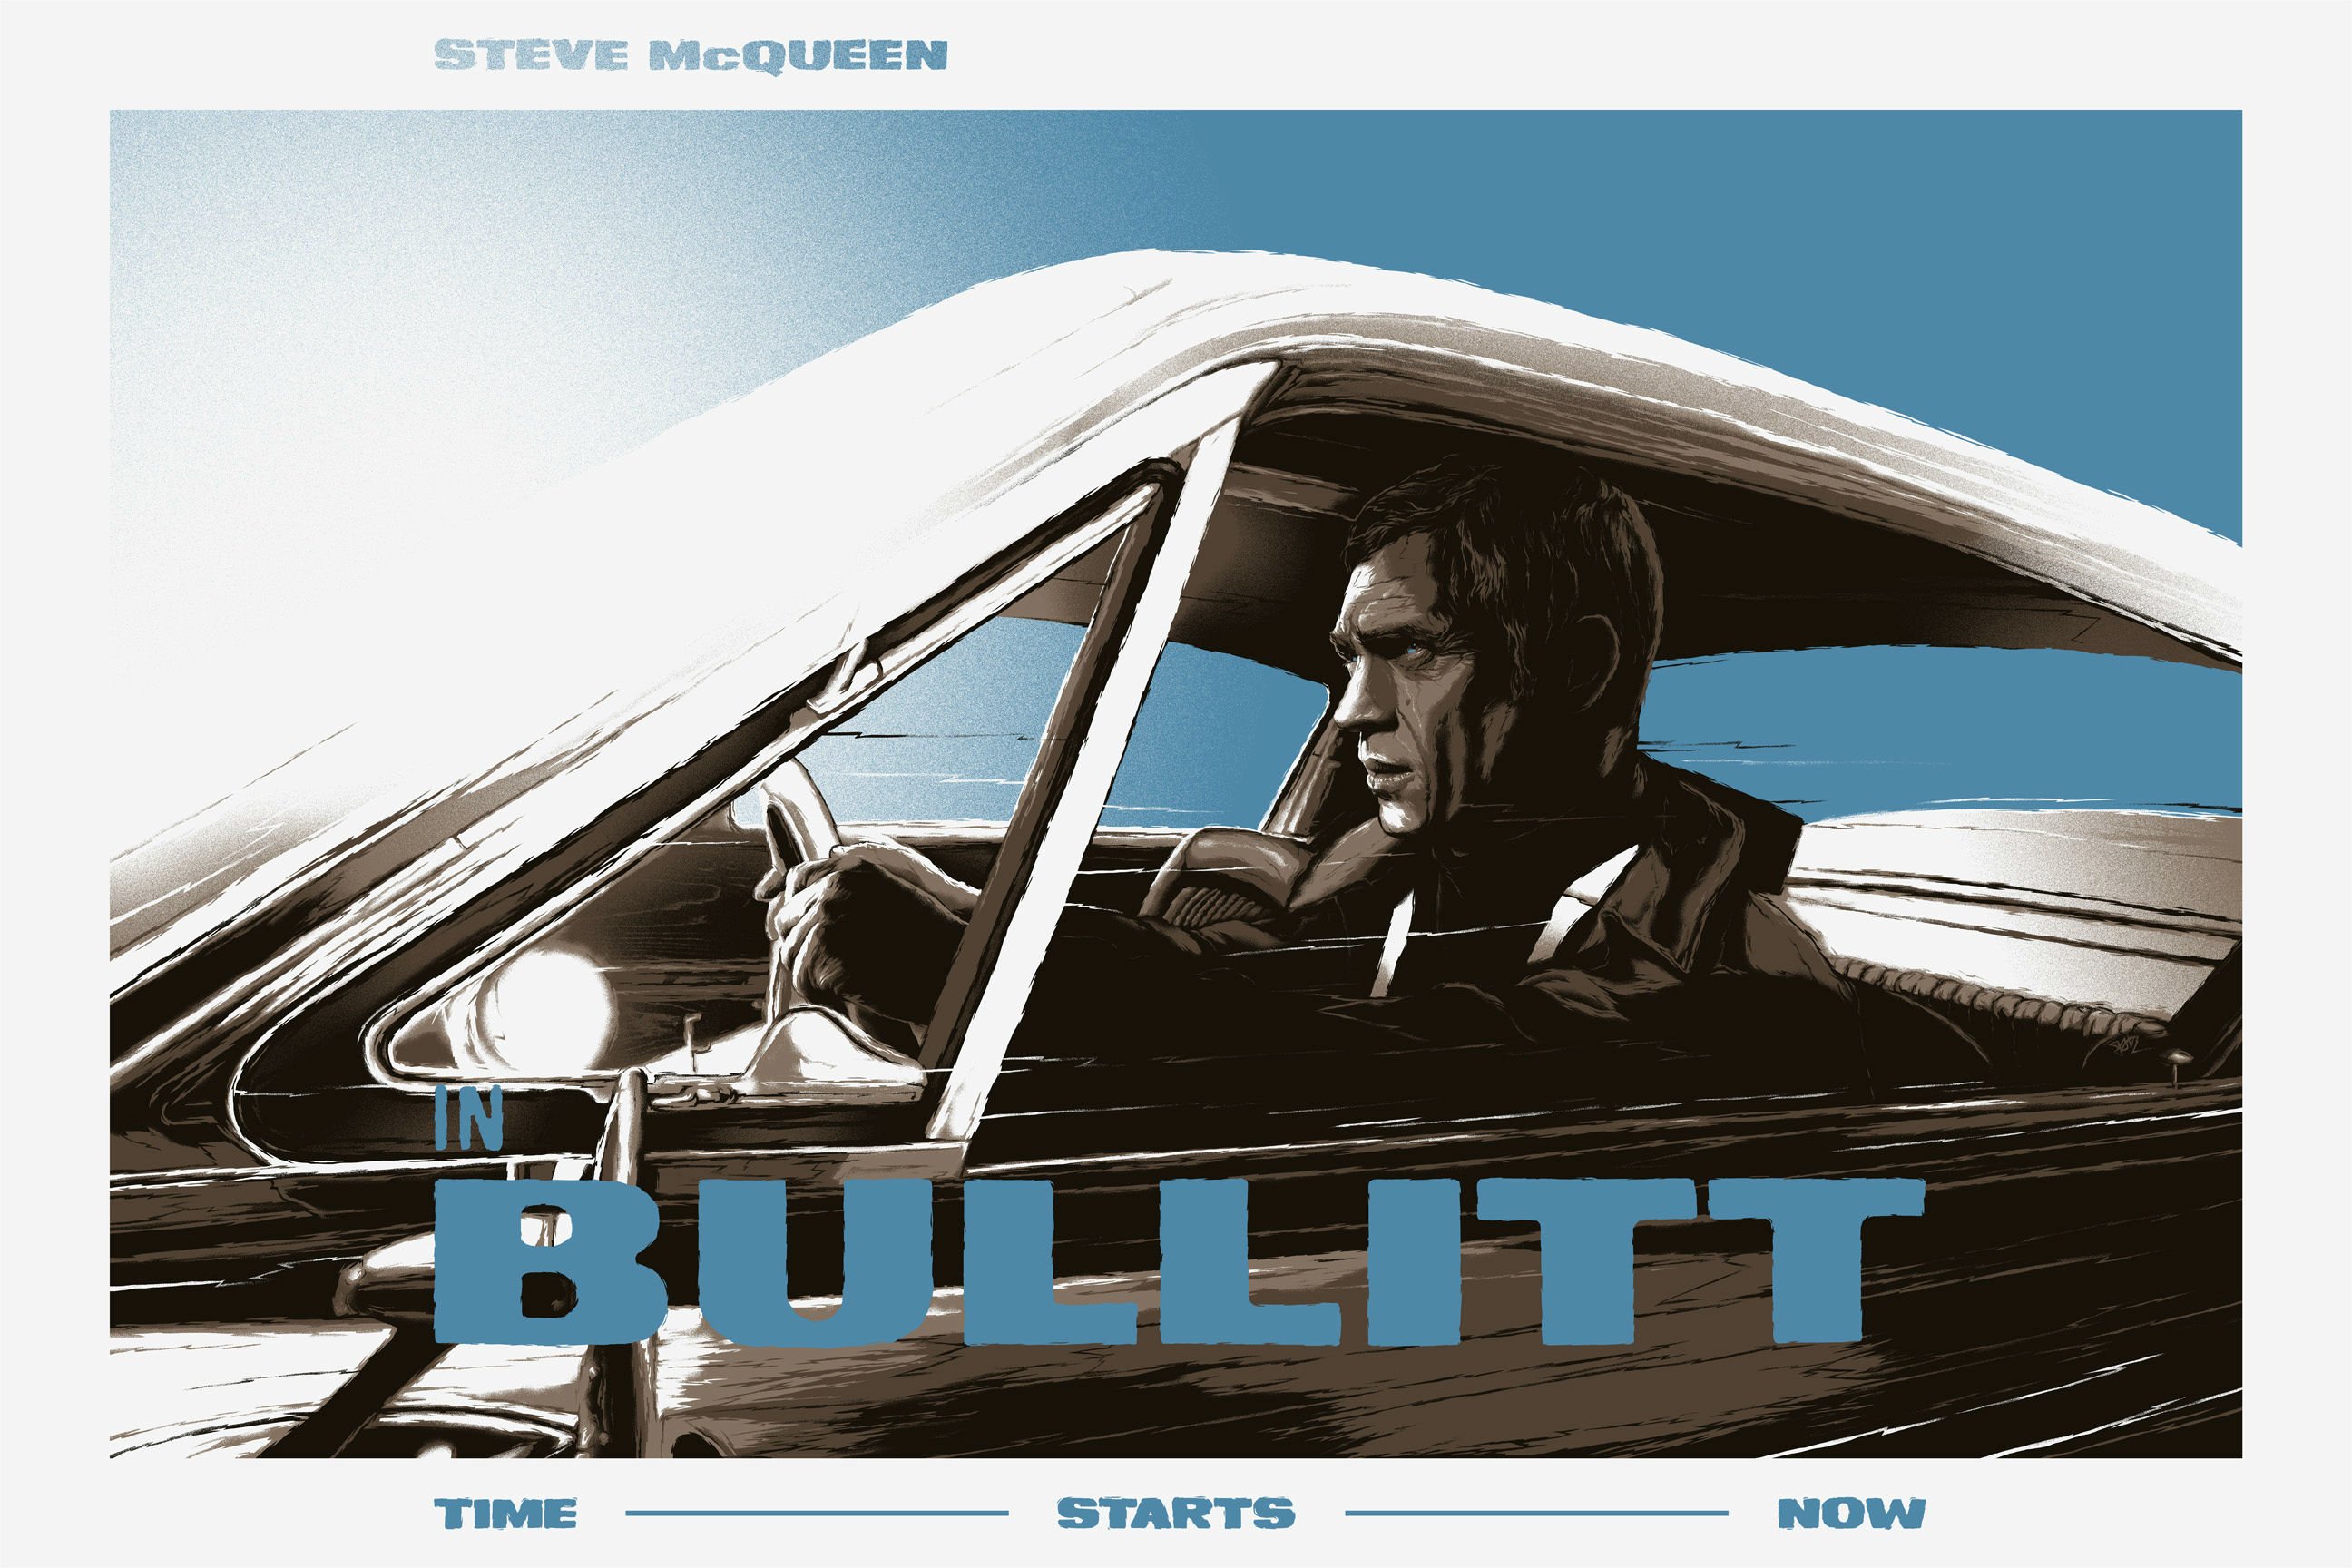 bullitt, Action, Crime, Mystery, Movie, Film, Poster Wallpaper